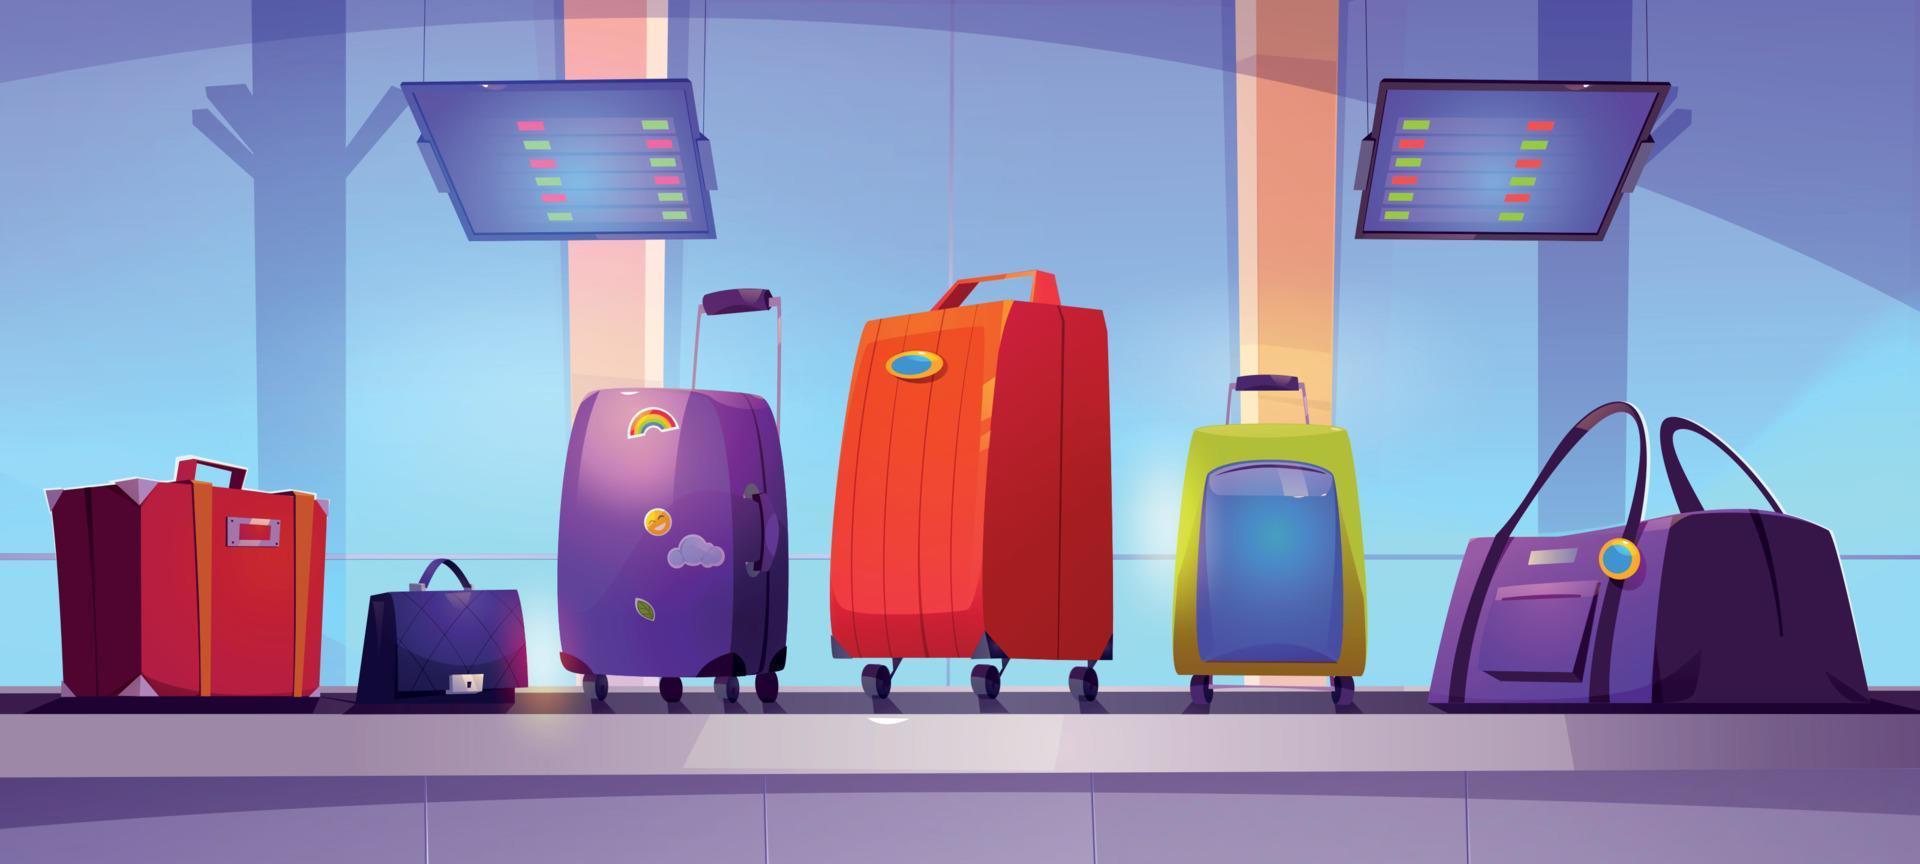 terminal de l'aéroport avec bagages sur tapis roulant vecteur